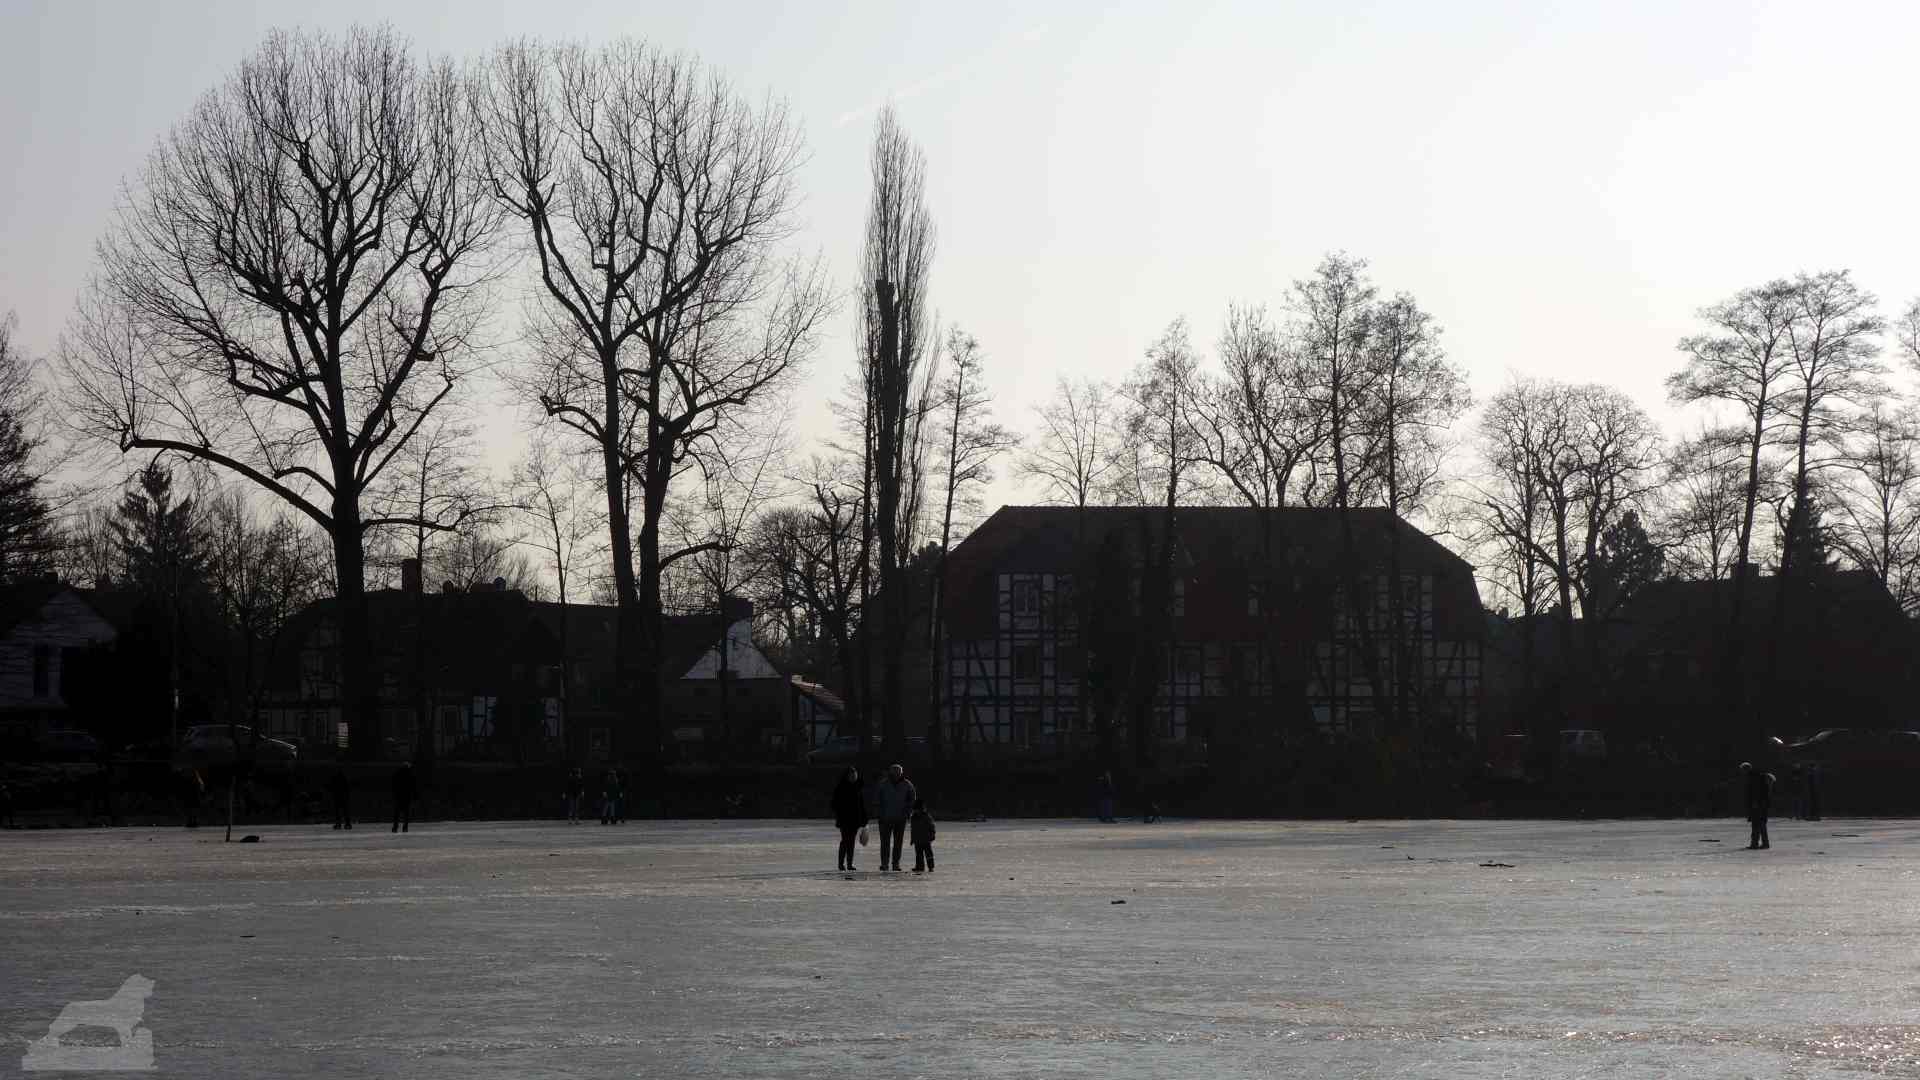 Kreuzteich im Winter (Riddagshäuser Teiche)